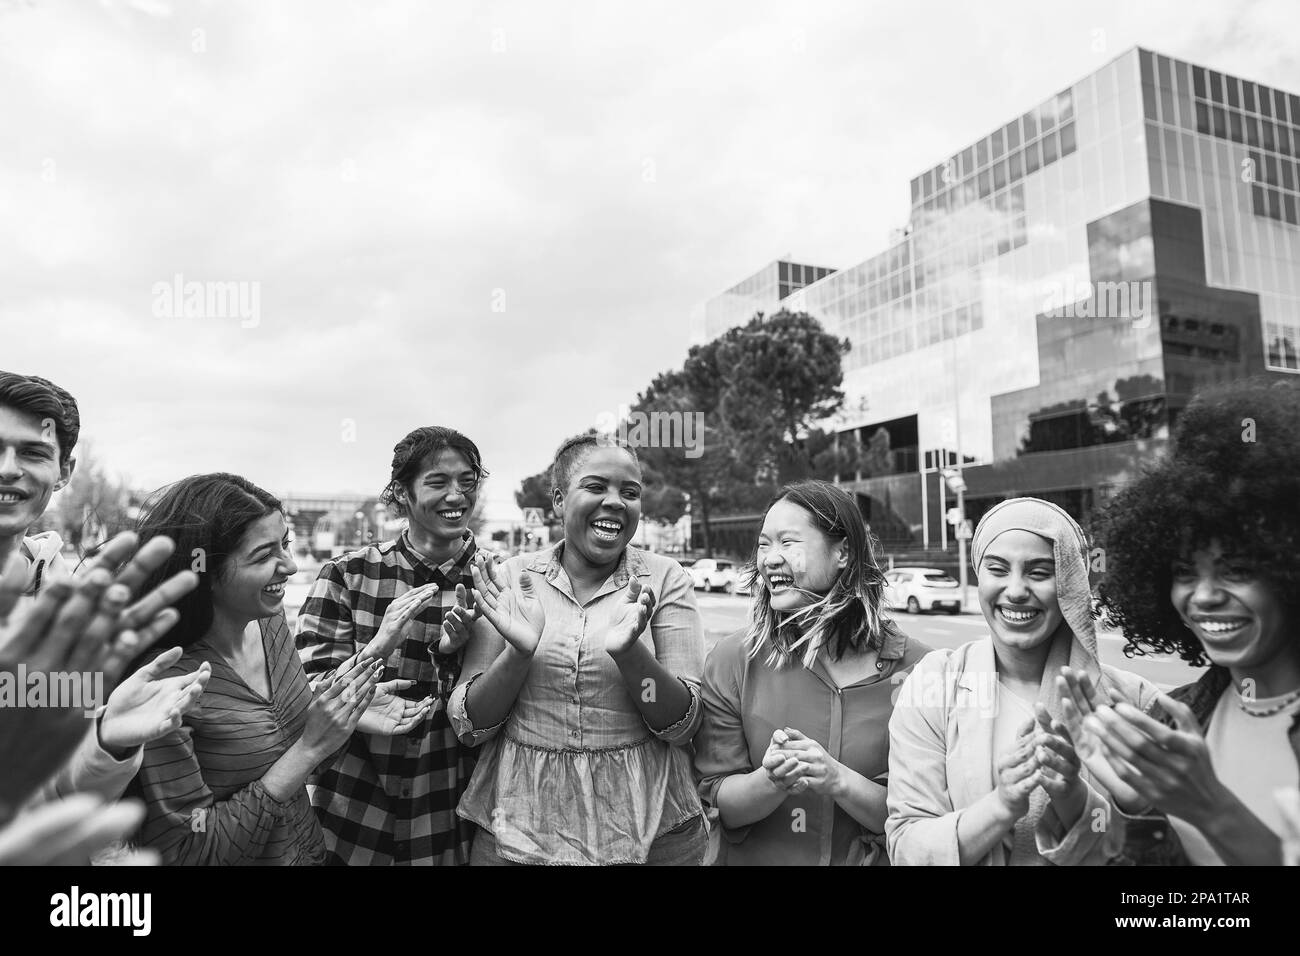 Giovani persone diverse che festeggiano insieme all'aria aperta - Focus on african curvy girl face - montaggio in bianco e nero Foto Stock